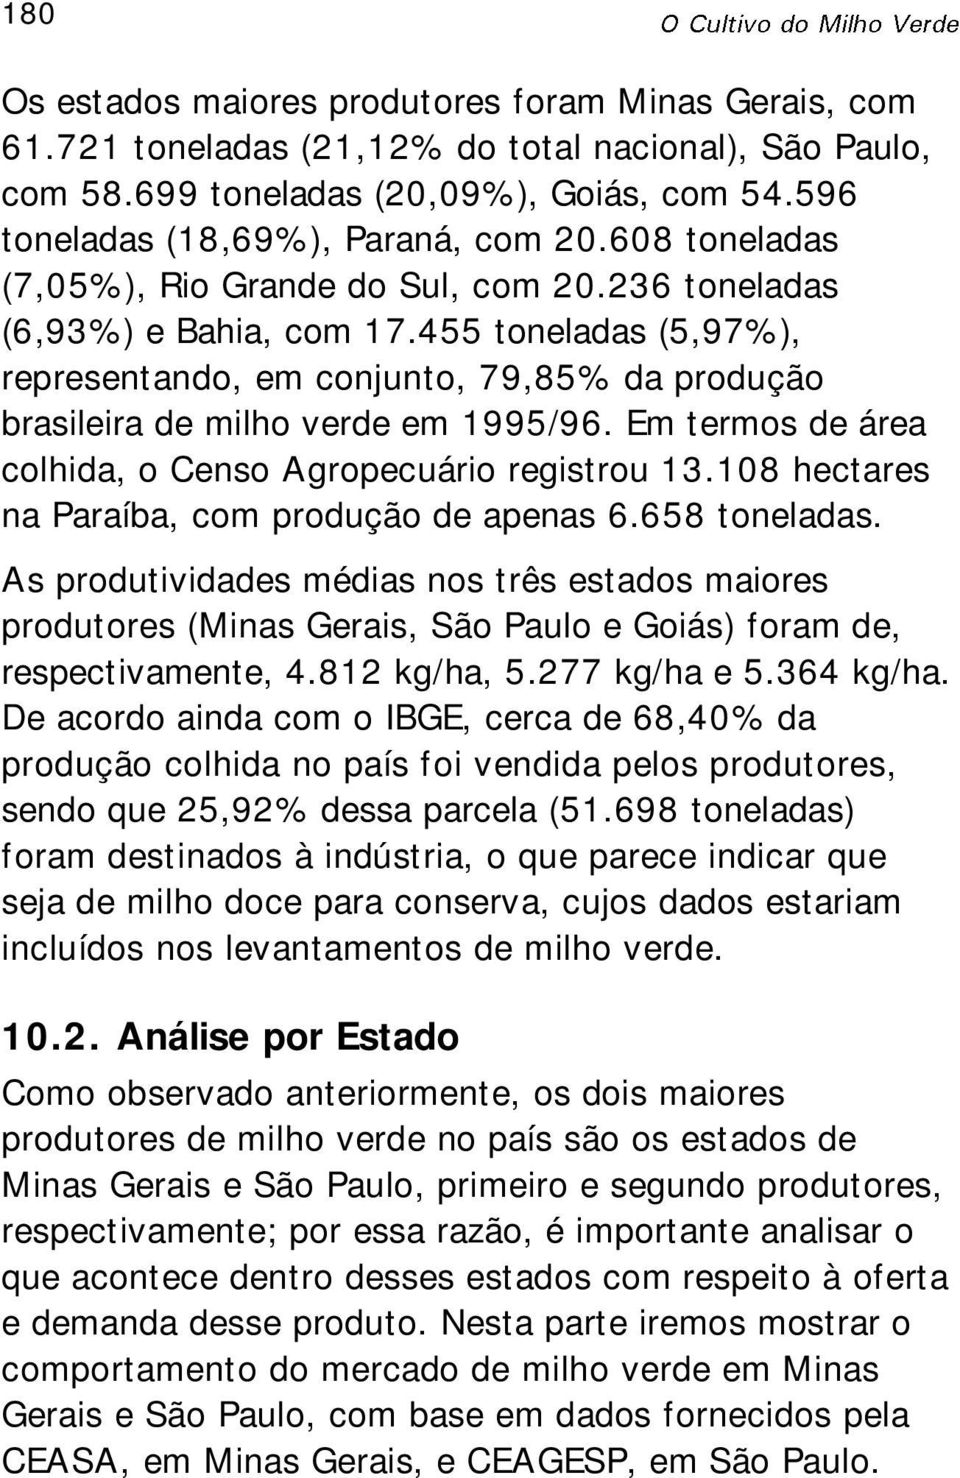 Em termos de área colhida, o Censo Agropecuário registrou 13.108 hectares na Paraíba, com produção de apenas 6.658 toneladas.